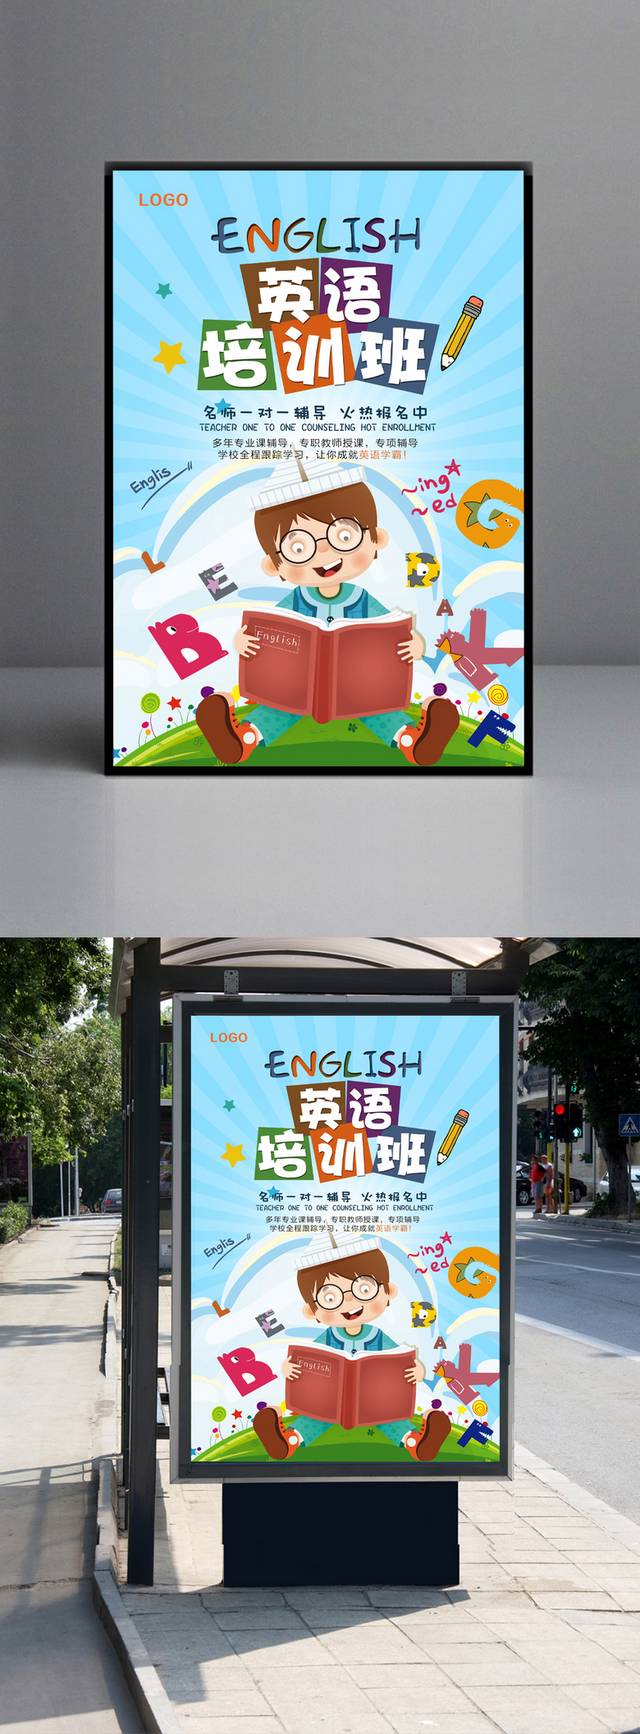 英语培训班招生海报